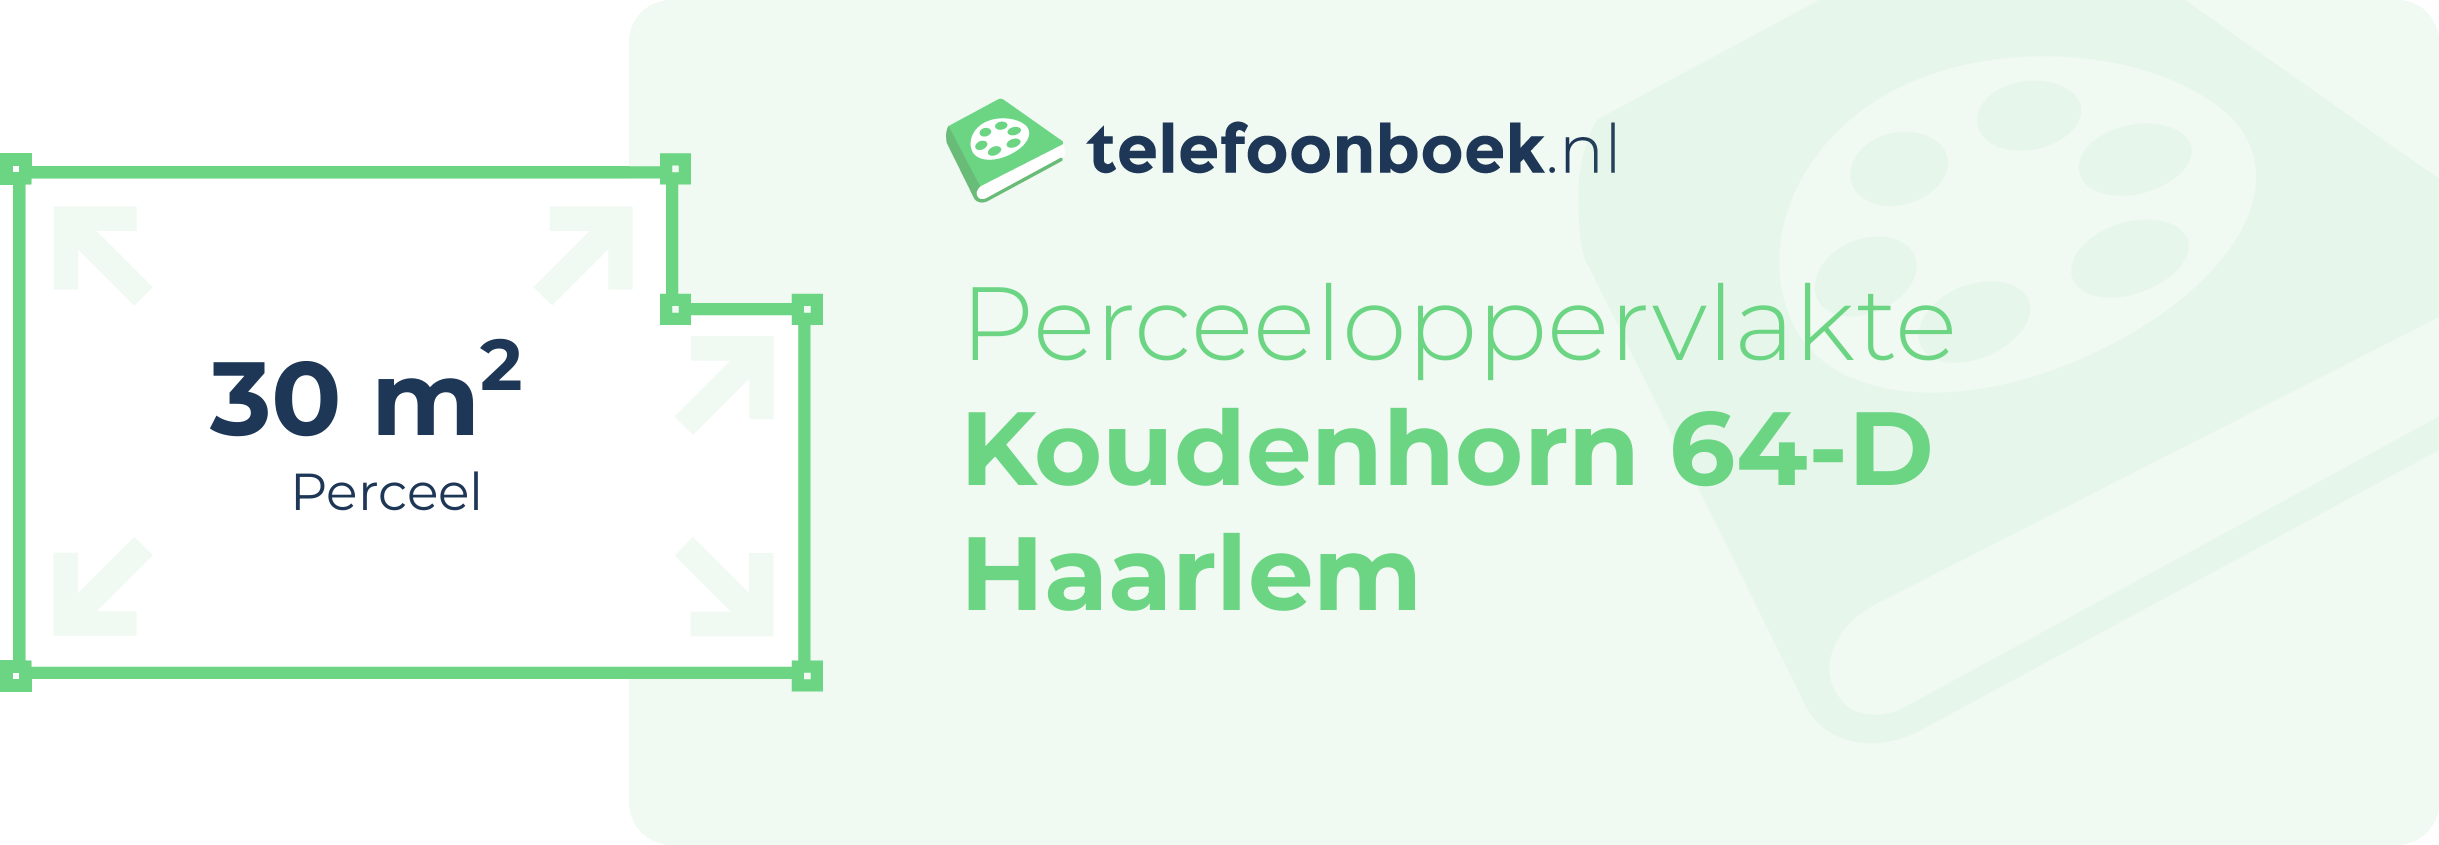 Perceeloppervlakte Koudenhorn 64-D Haarlem